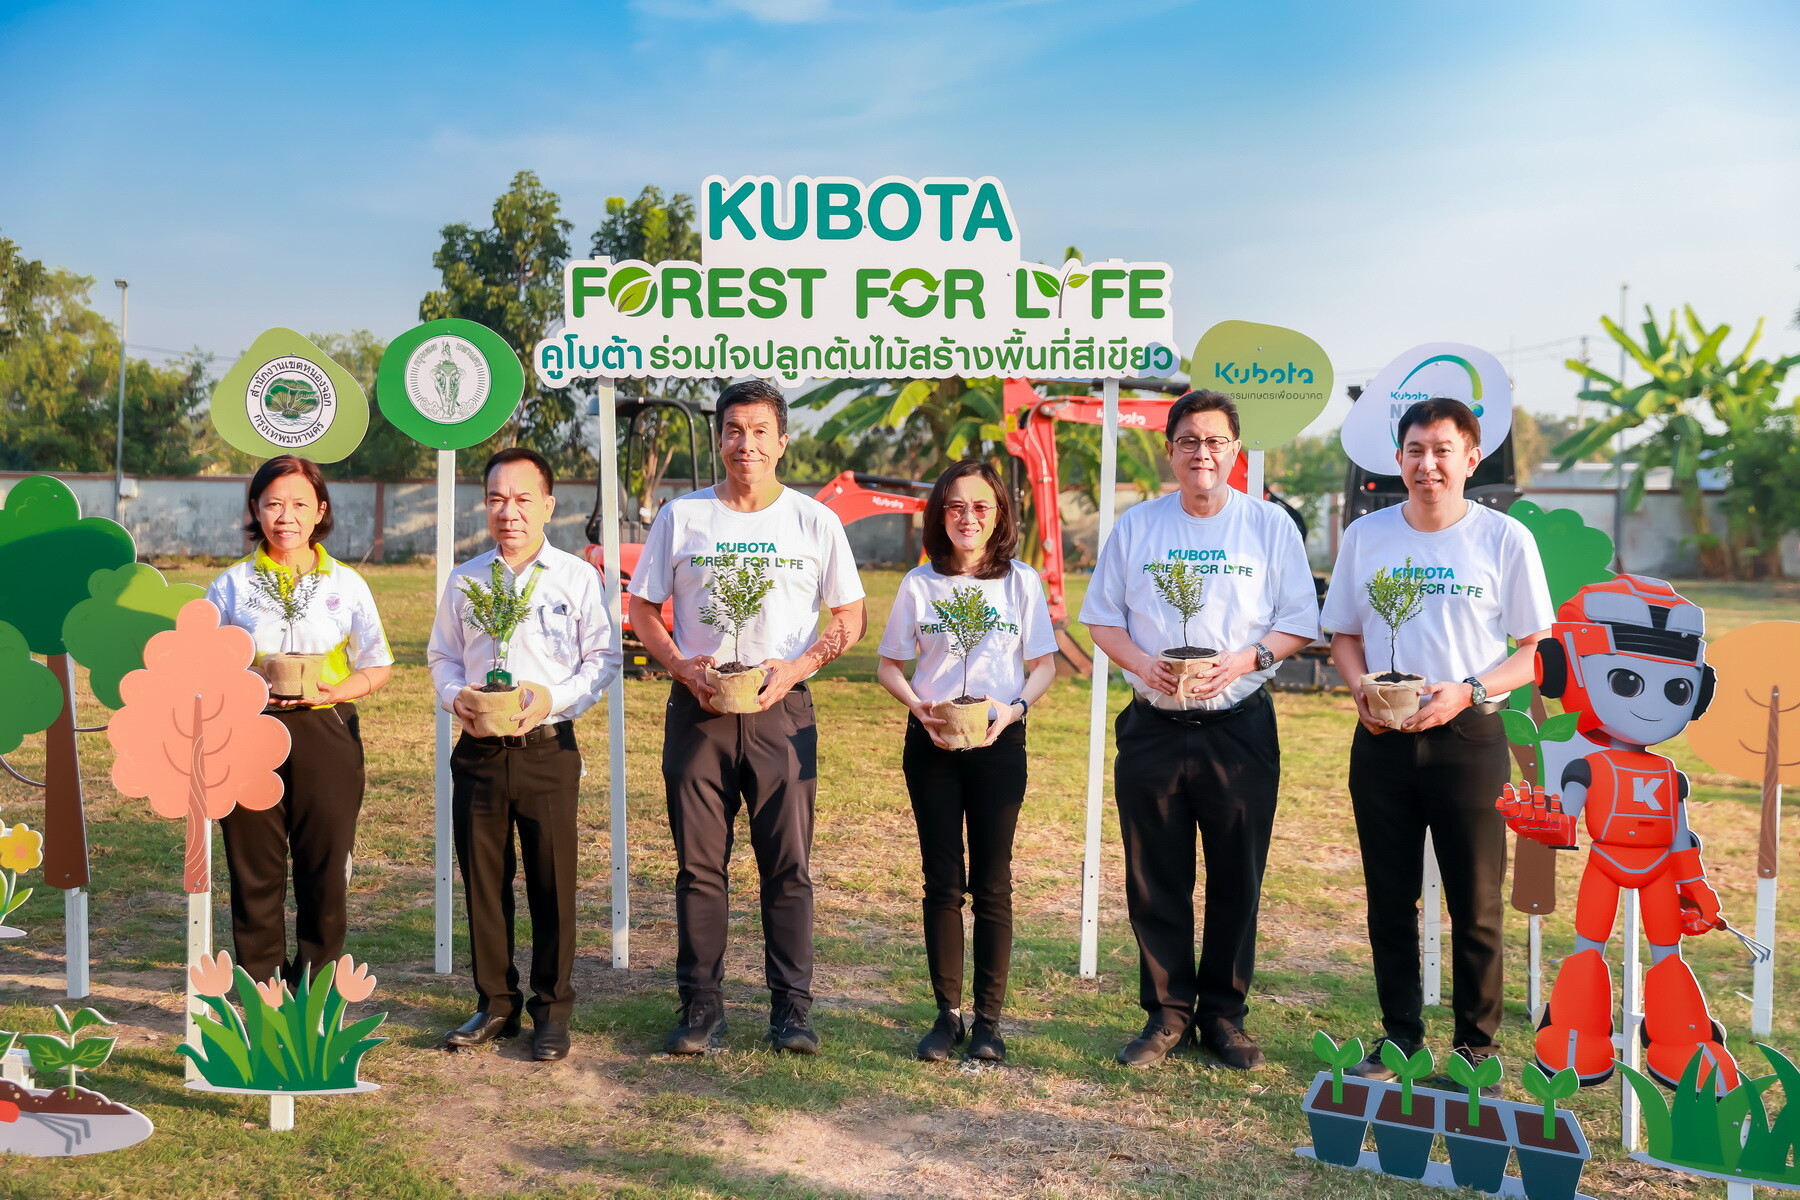 สยามคูโบต้า จัดโครงการ "KUBOTA FOREST FOR LIFE" ปลูกต้นไม้ 5,000 ต้น สร้างกำแพงสีเขียวกรองฝุ่นรอบเขตชั้นนอกกทม.